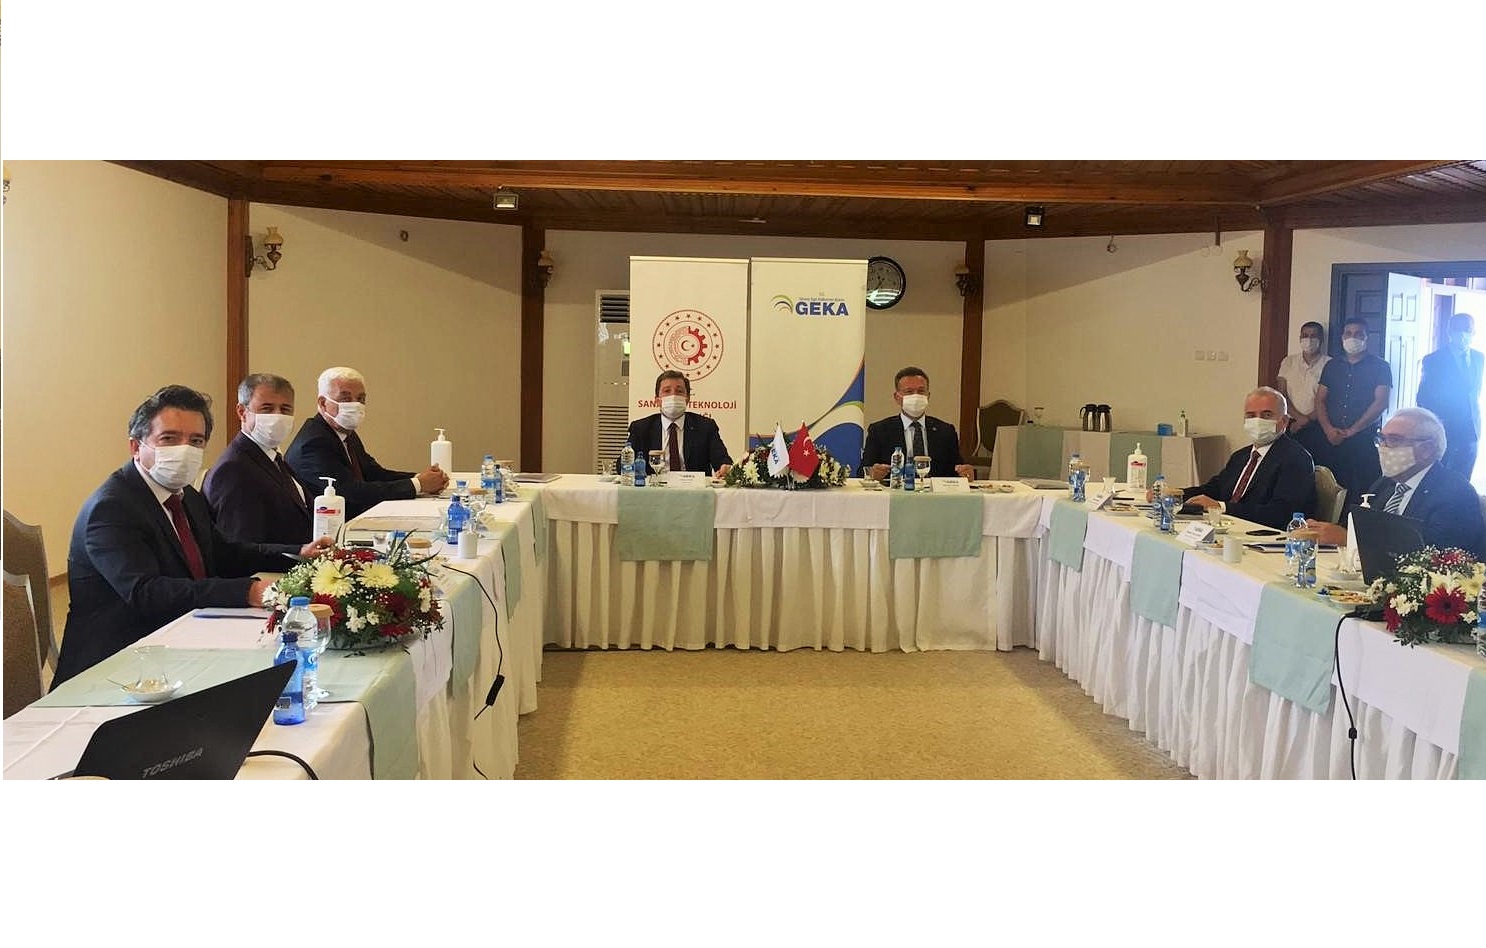 Güney Ege Kalkınma Ajansı’nın 133’üncü Yönetim Kurulu Toplantısı 27 Ekim 2020 tarihinde Muğla’da gerçekleştirildi.